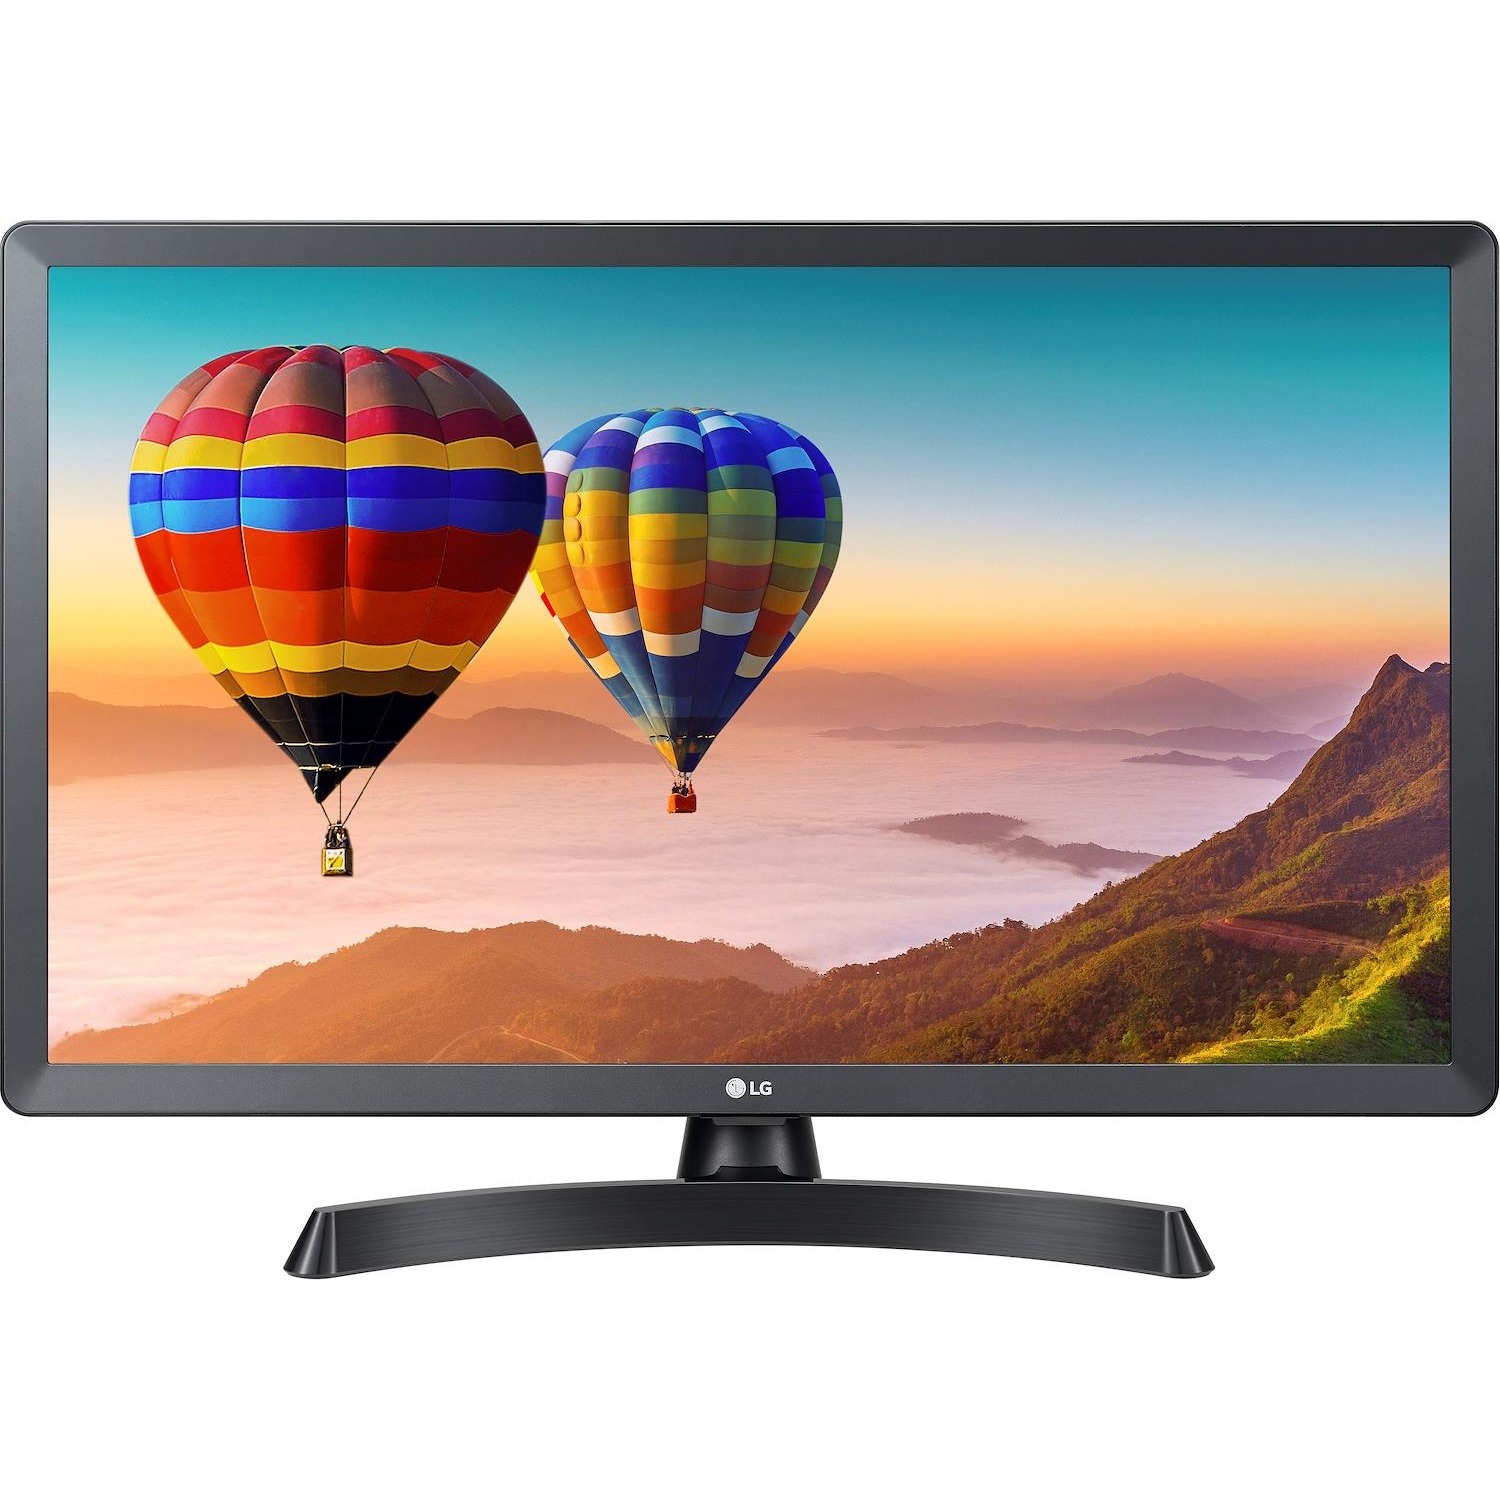 Immagine per TV LED Monitor LG 28TN515VP da DIMOStore